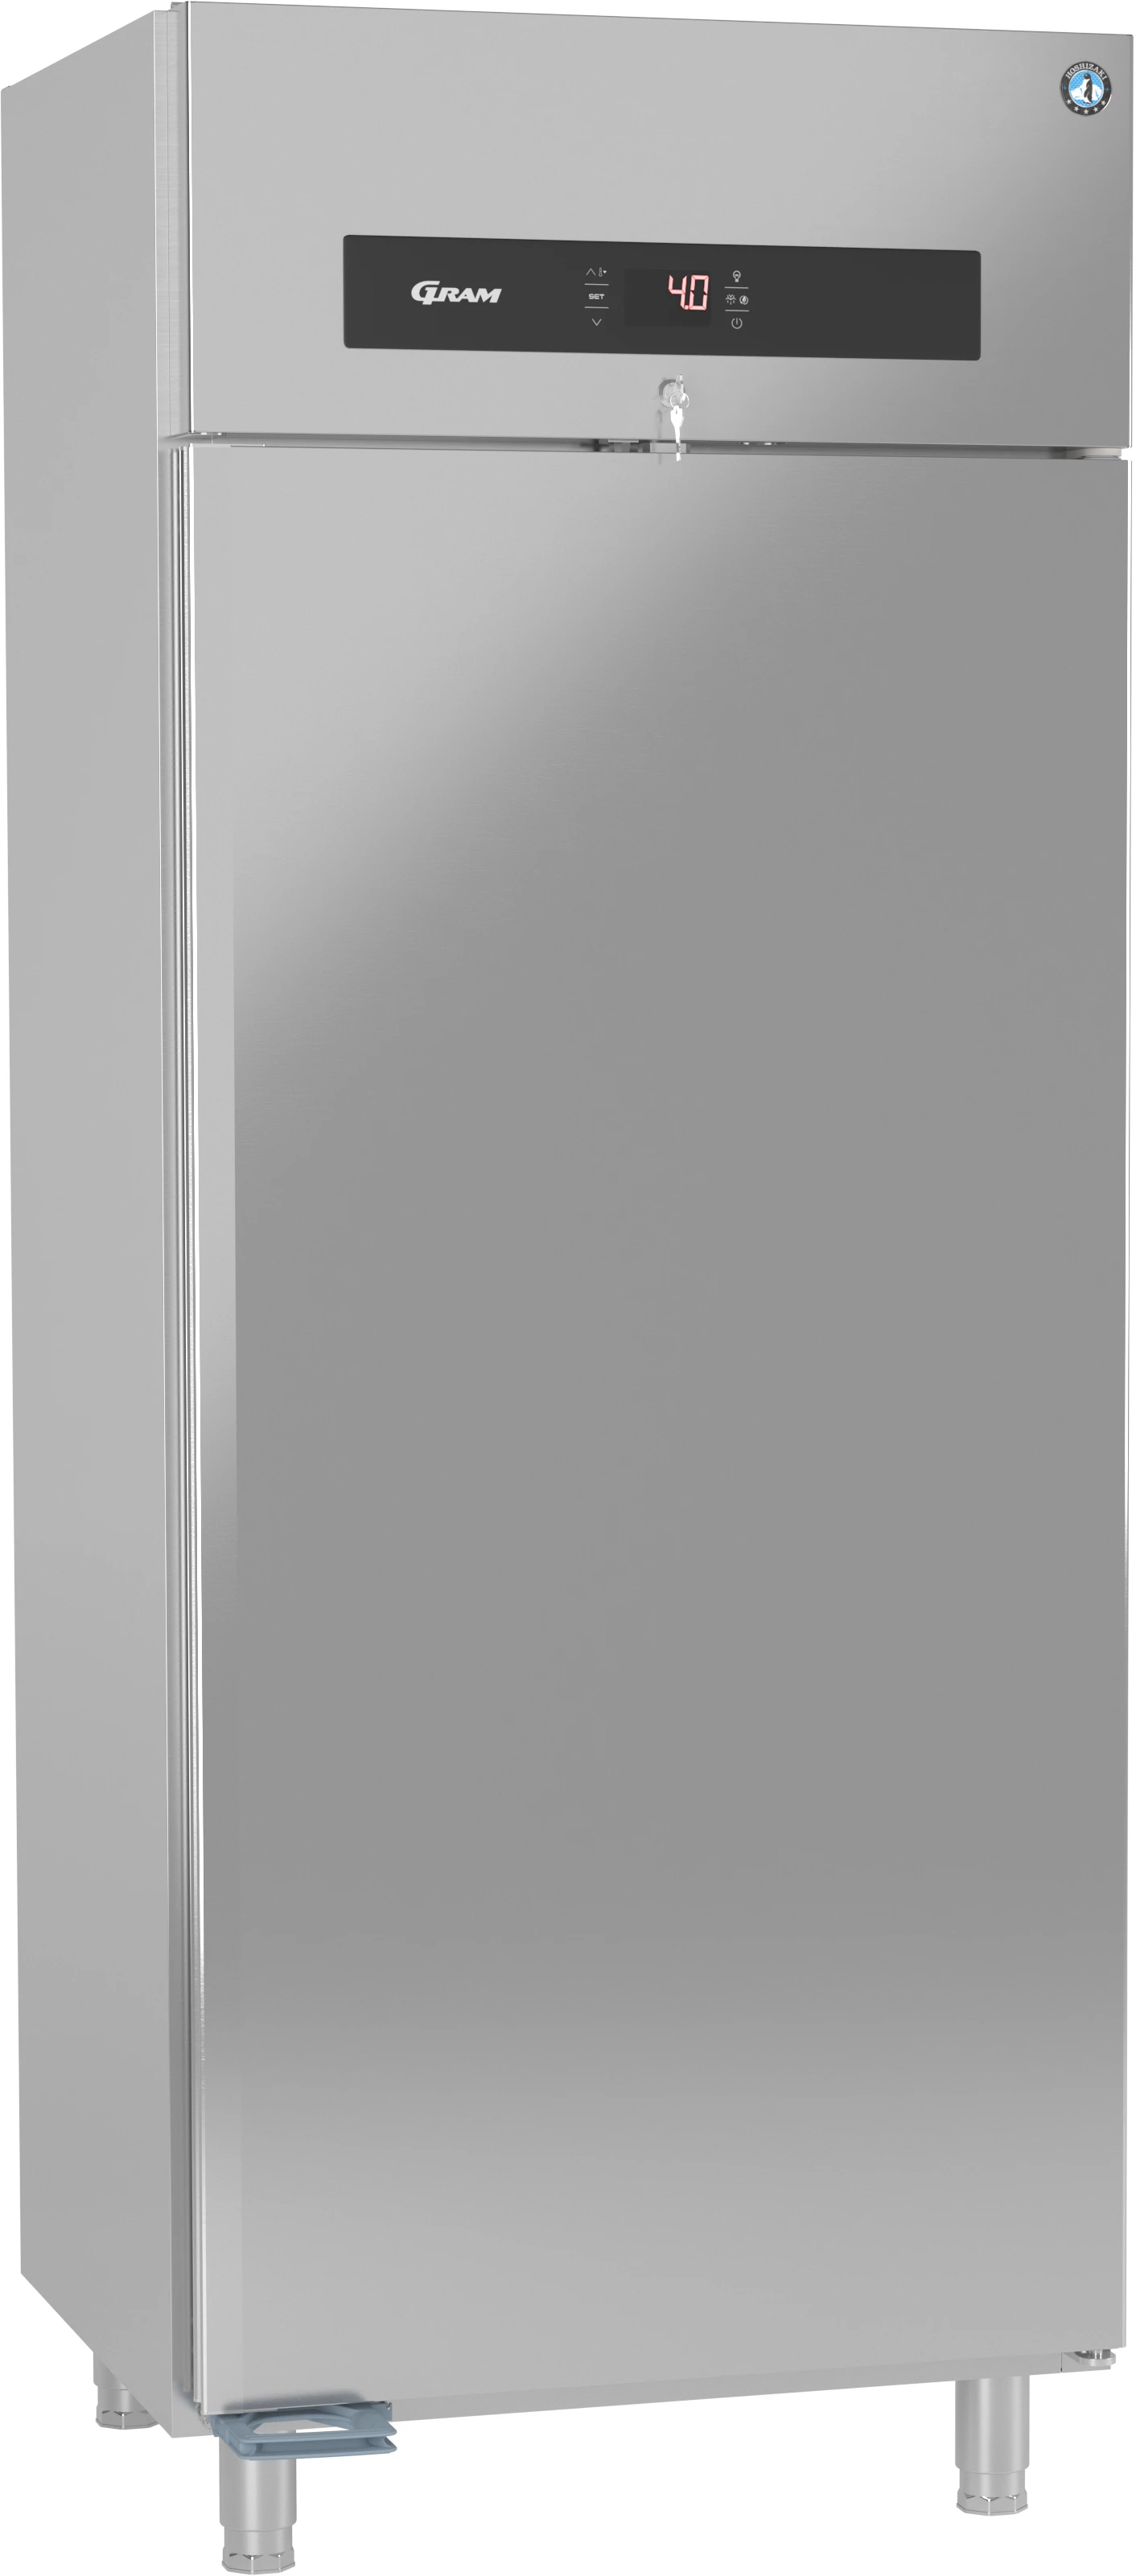 Gram Premier MW80 L DR køleskab